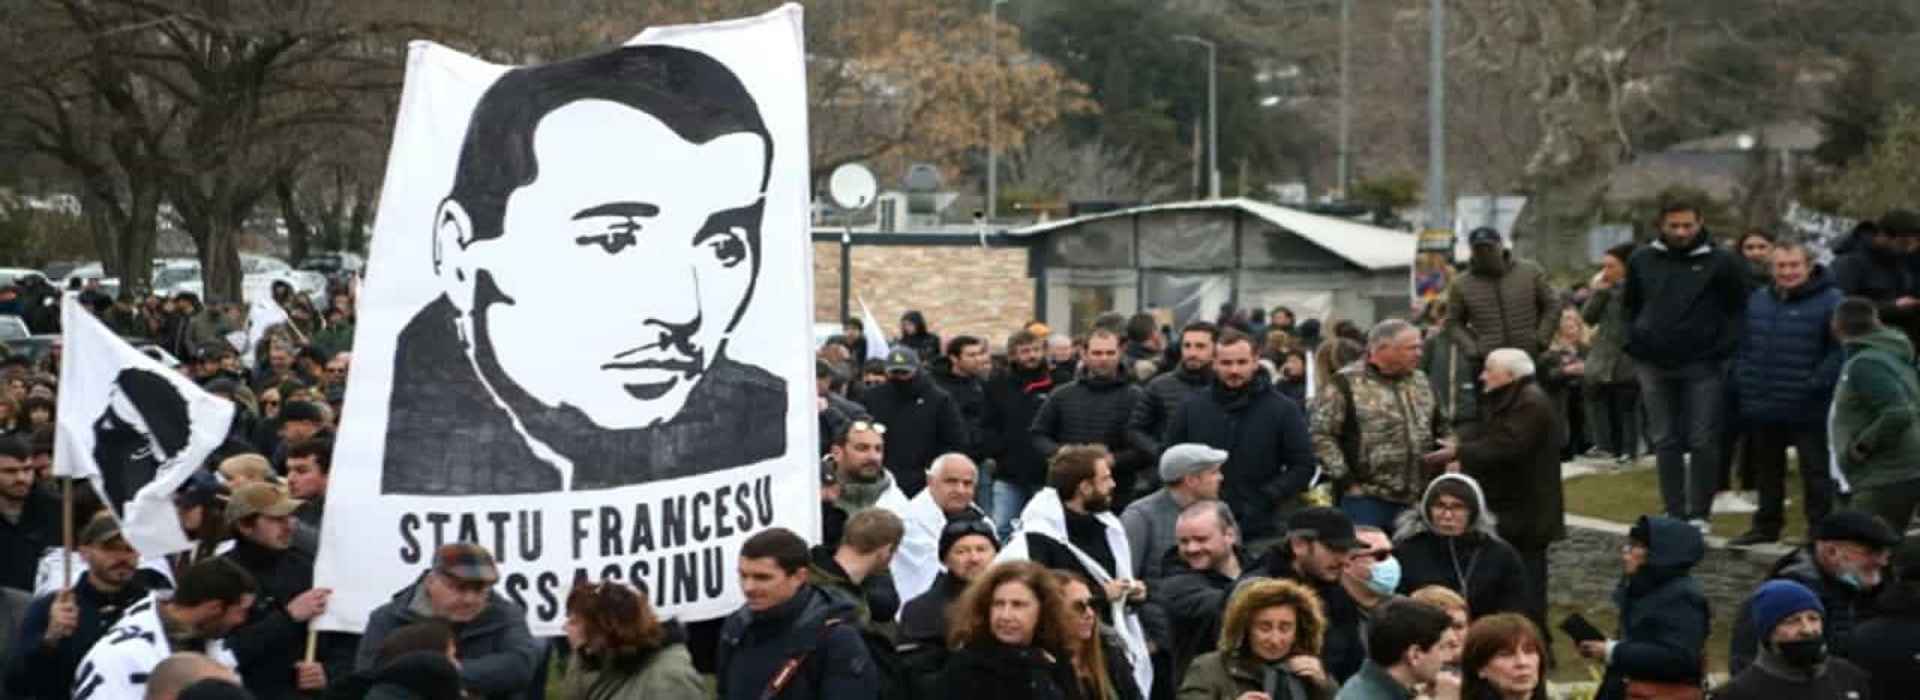 Corsica, la rivolta per Yvan Colonna: Stato francese assassino